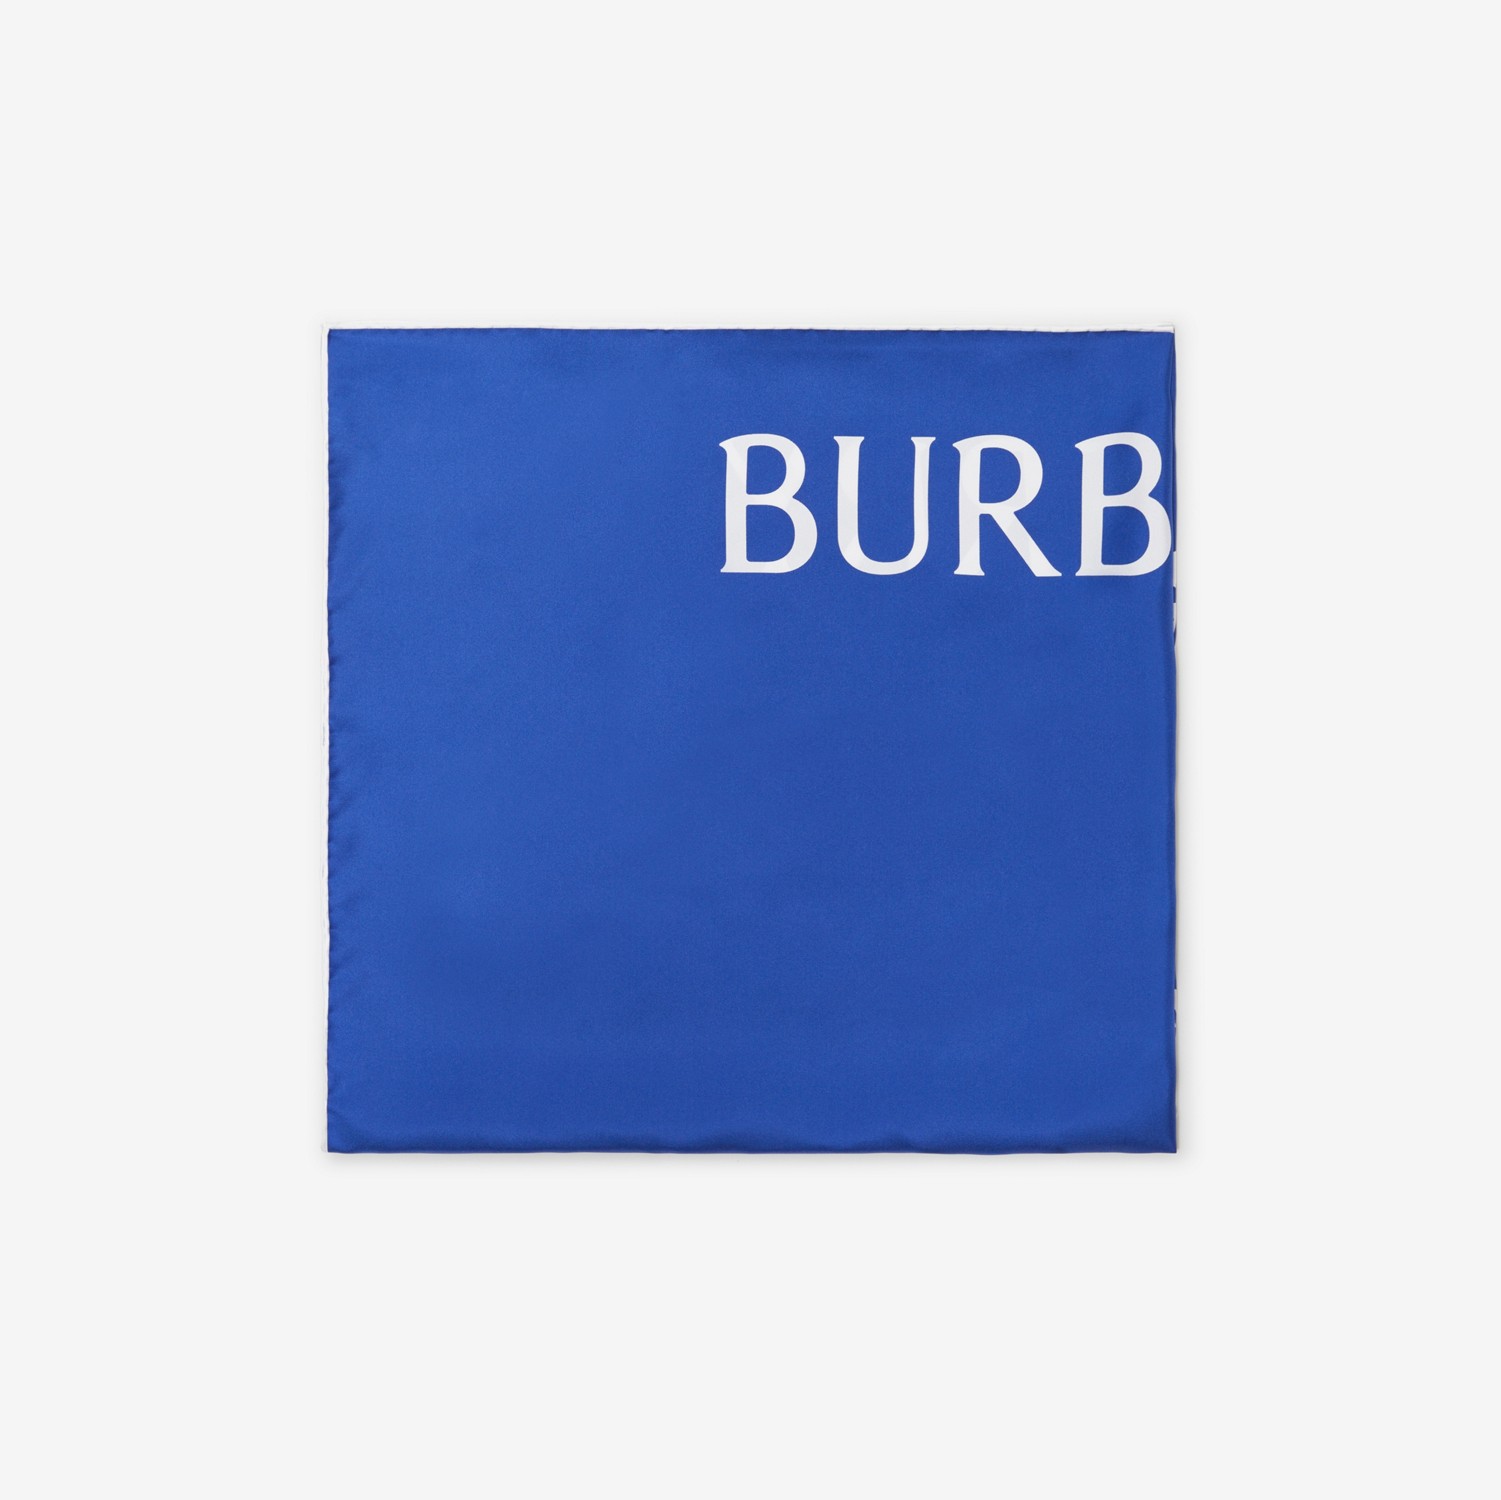 马术骑士徽标丝巾 (骑士蓝) | Burberry® 博柏利官网